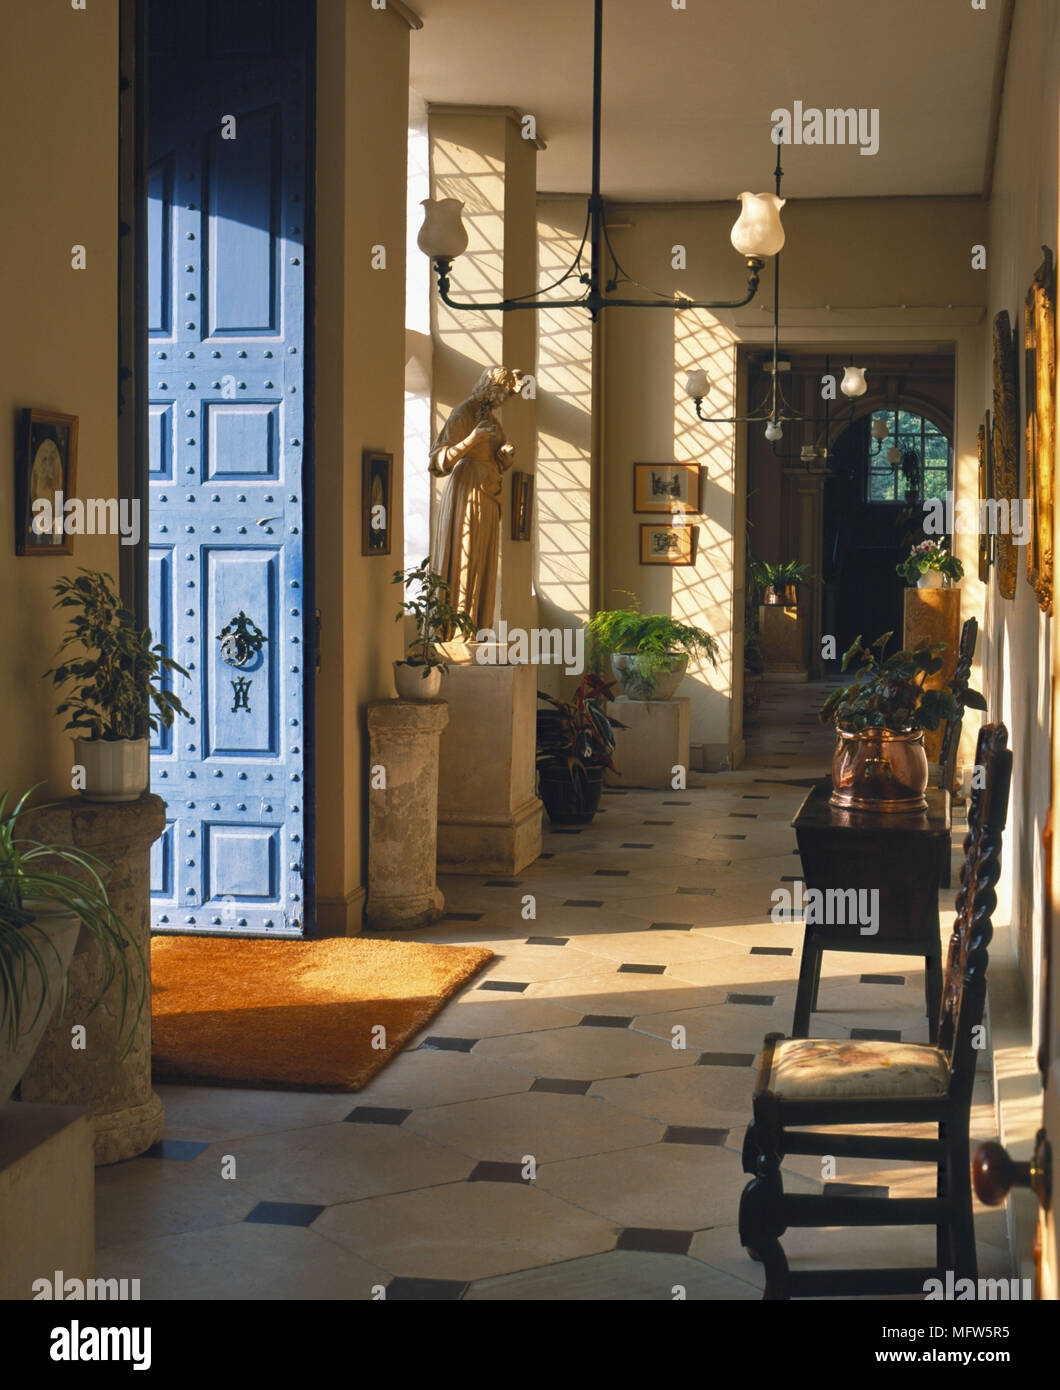 Ein traditionelles Flur Fliesen Tür öffnen jakobinischen Stil Holzstuhl Haus Pflanzen Stockfoto